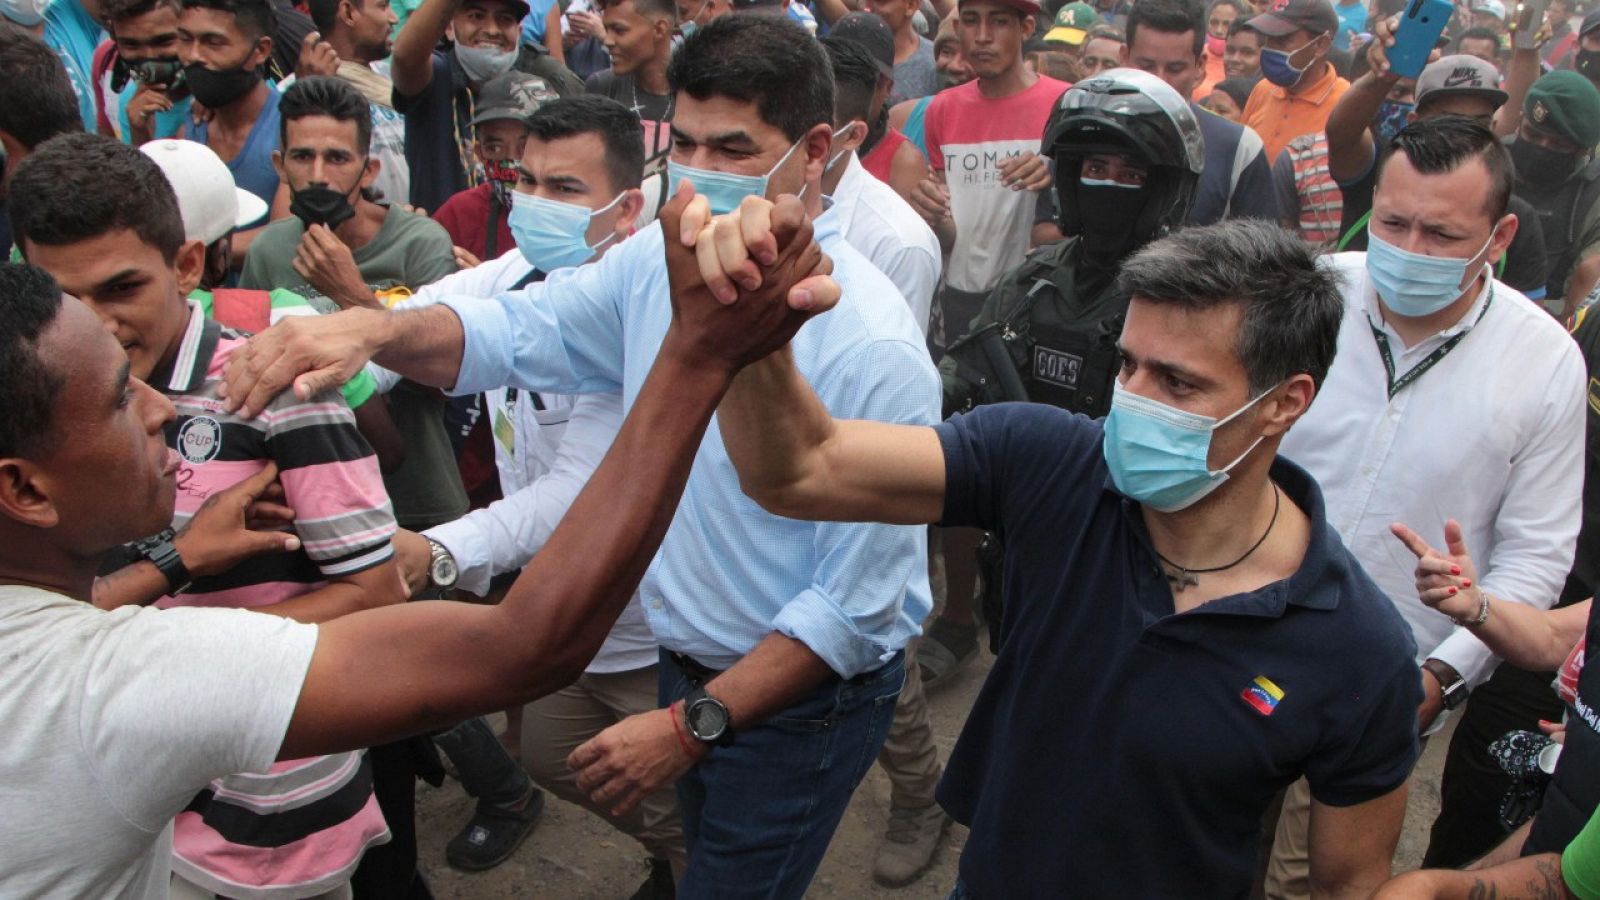 El líder opositor venezolano Leopoldo López saludando a ciudadanos de su país en el sector de La Parada, punto fronterizo con Venezuela aledaño a la ciudad de Cúcuta, Norte de Santander (Colombia).